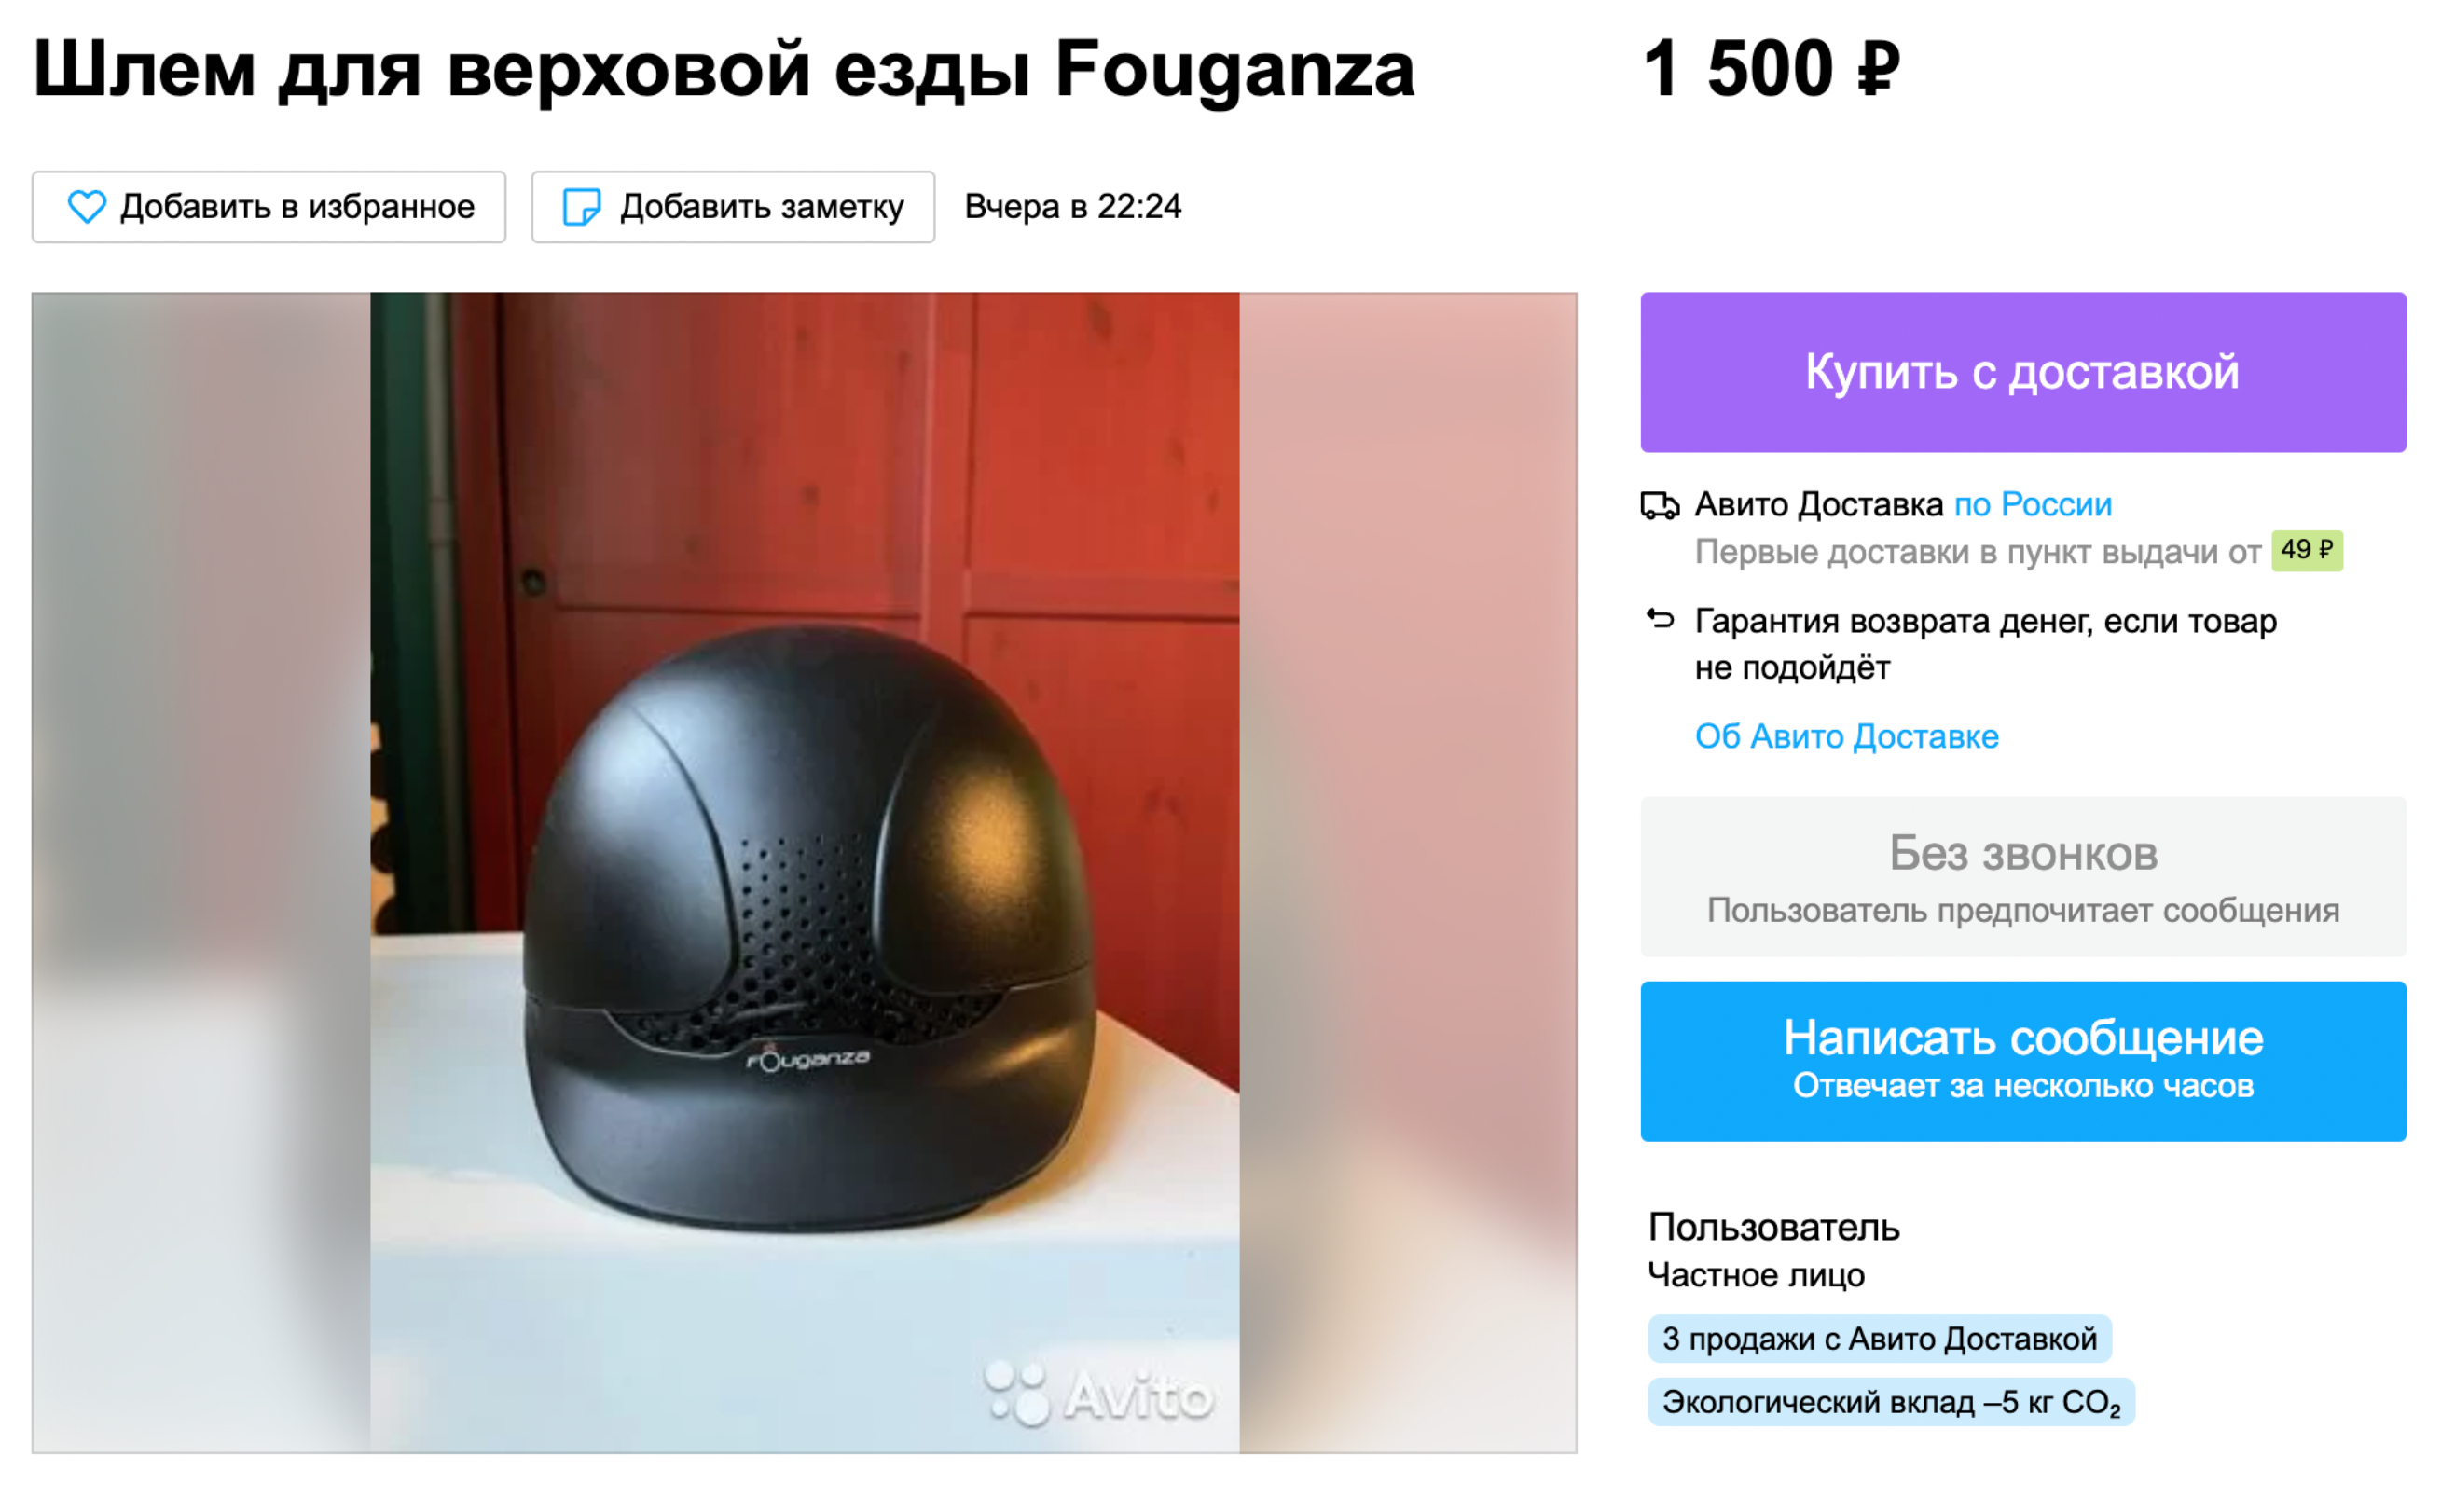 Такой новый шлем в магазине стоит 3000 ₽. А на «Авито» — в два раза дешевле. Источник: avito.ru